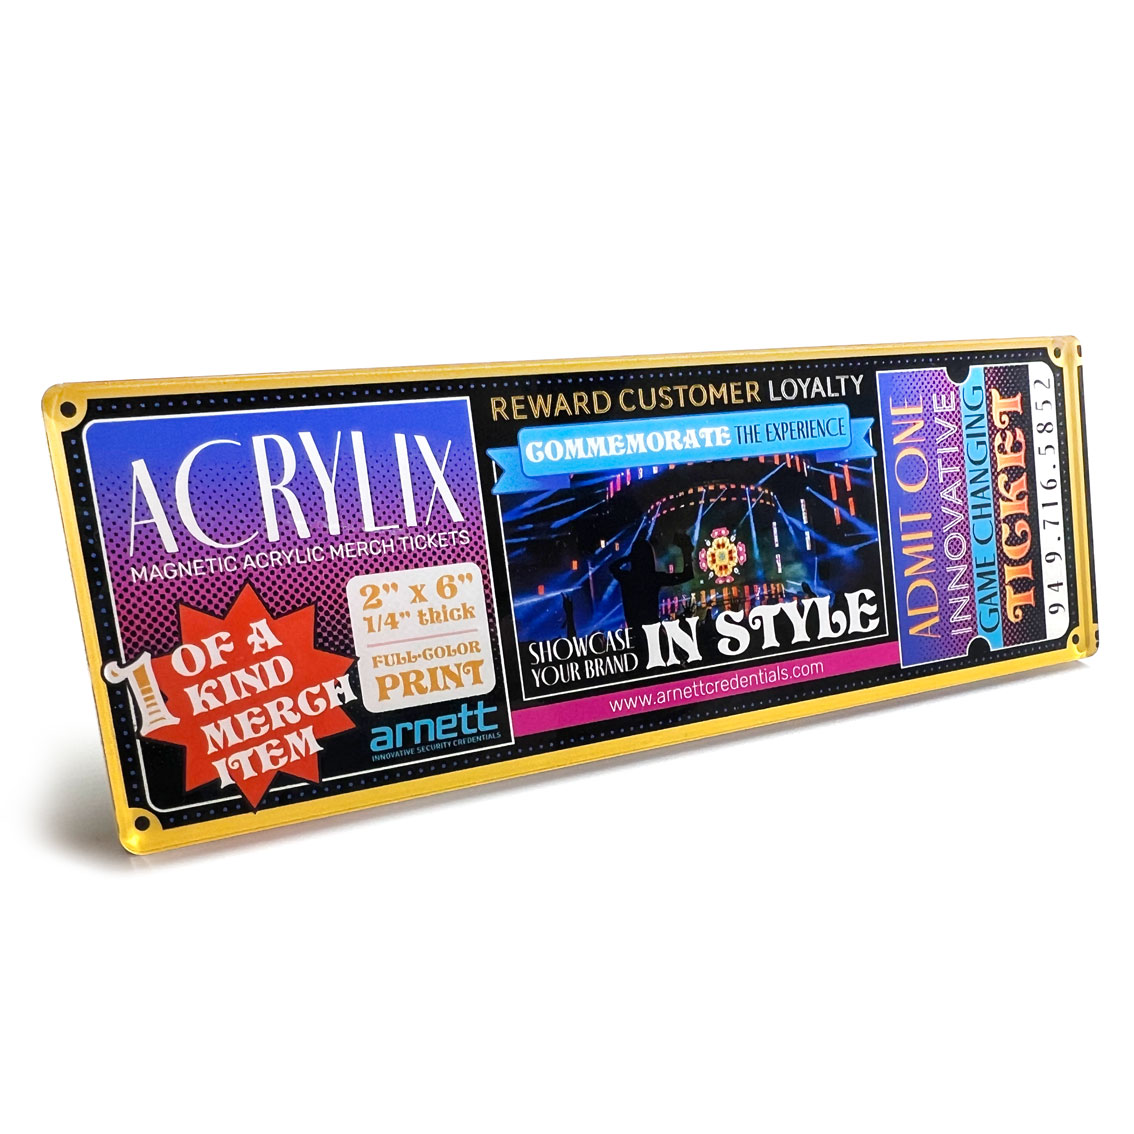 Acrylix | Magnetic Acrylic Tickets